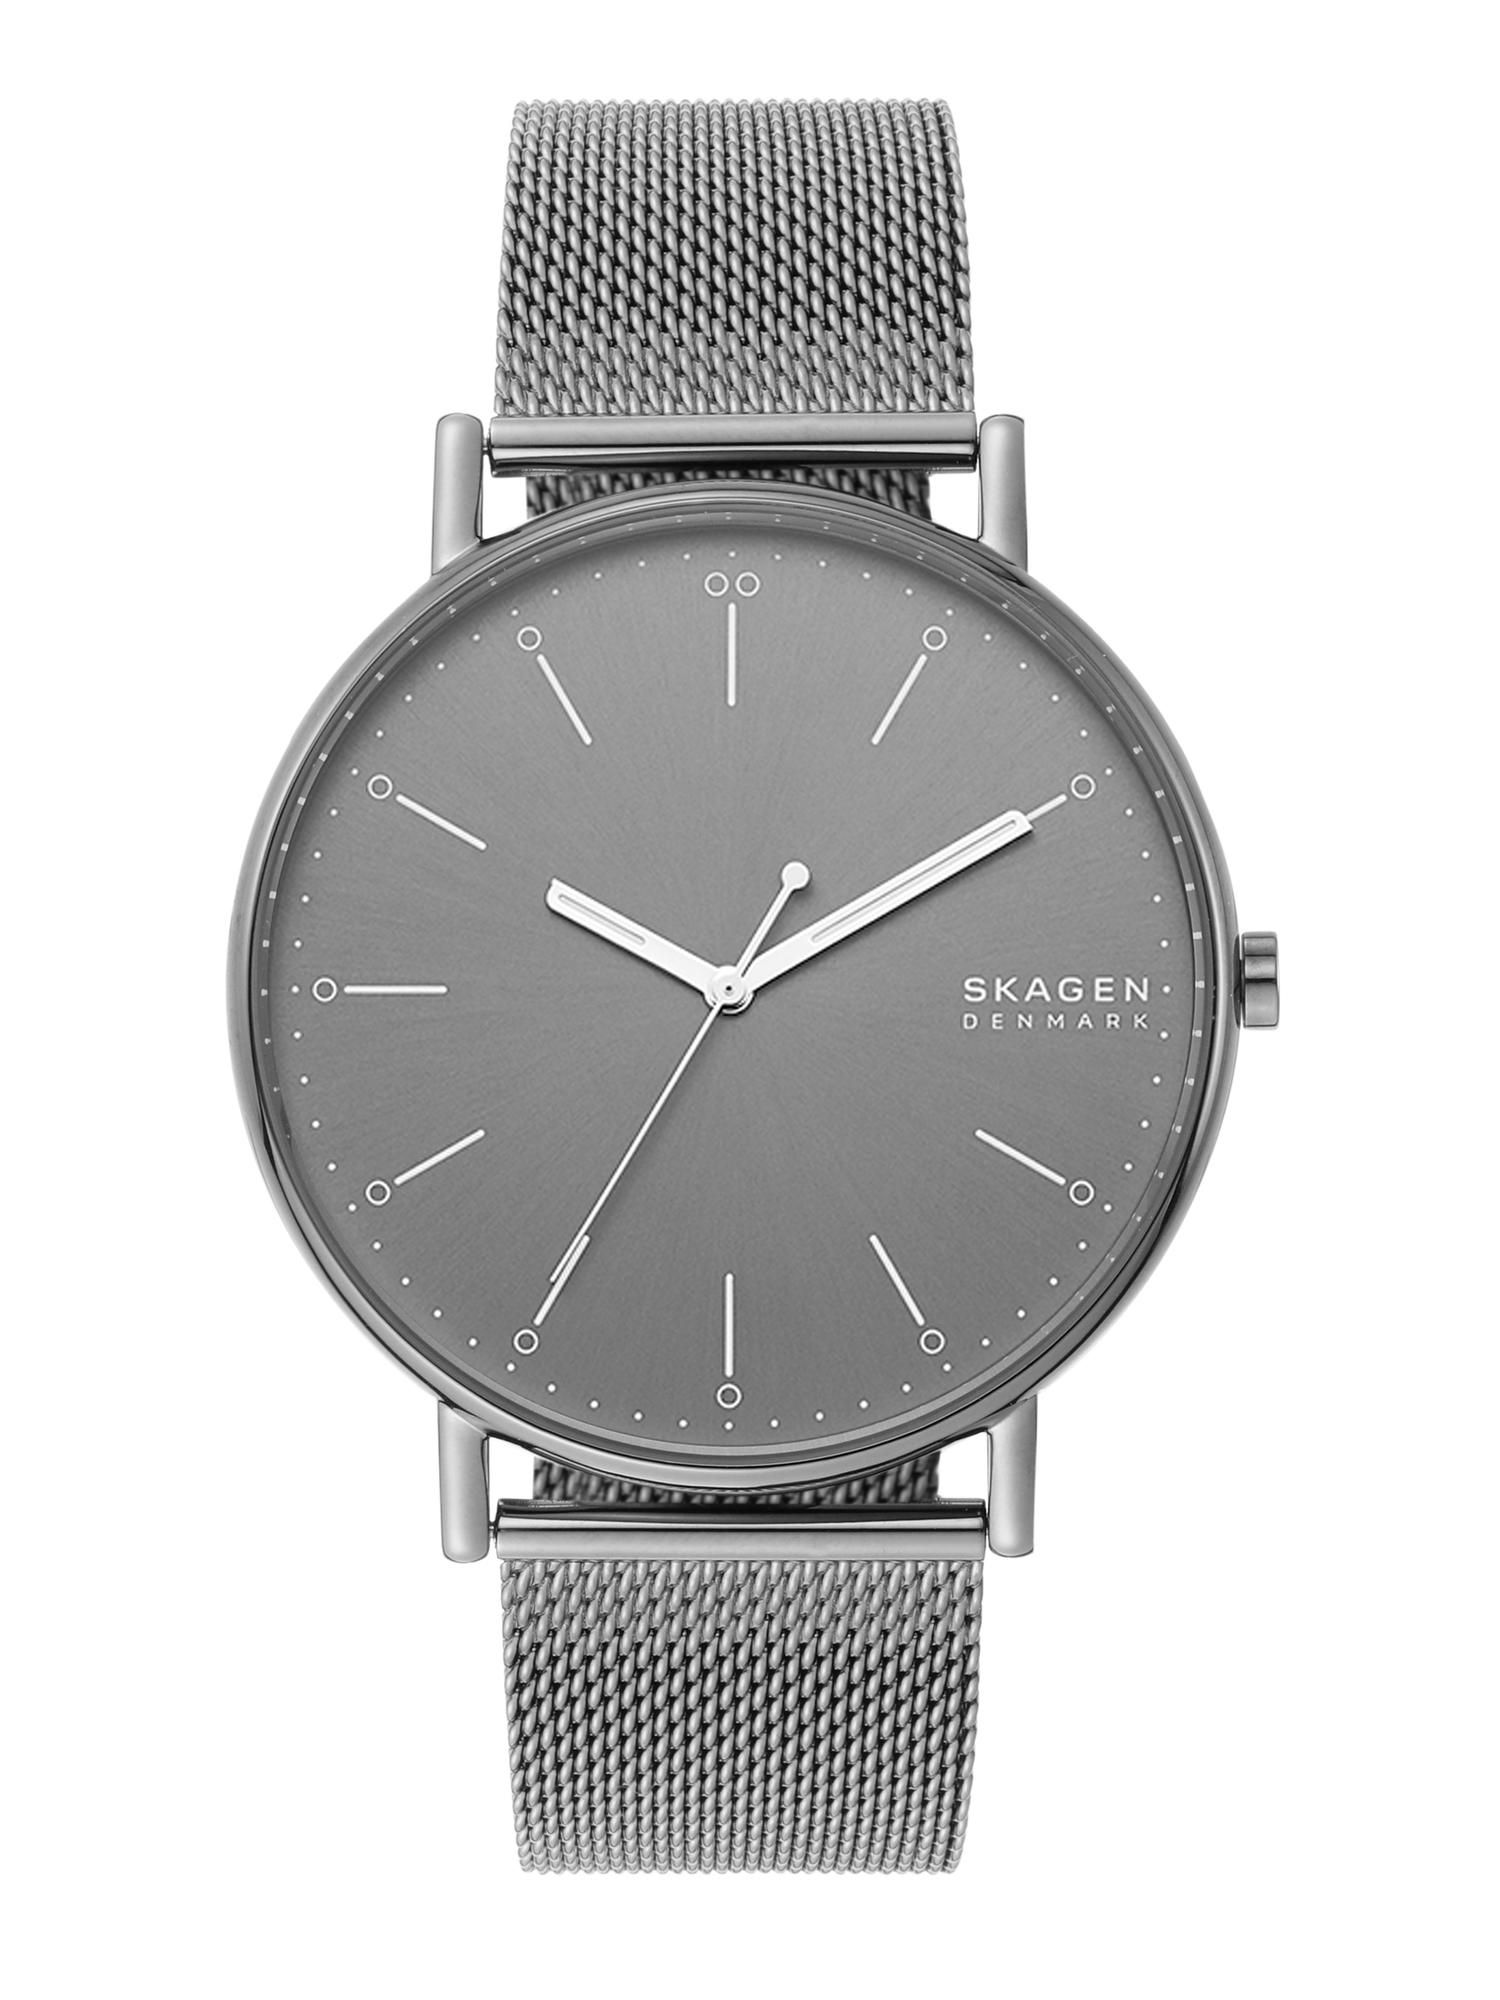 Skagen SKW6549 Signatur Grey Watch For Men: Buy Skagen SKW6549 Signatur ...